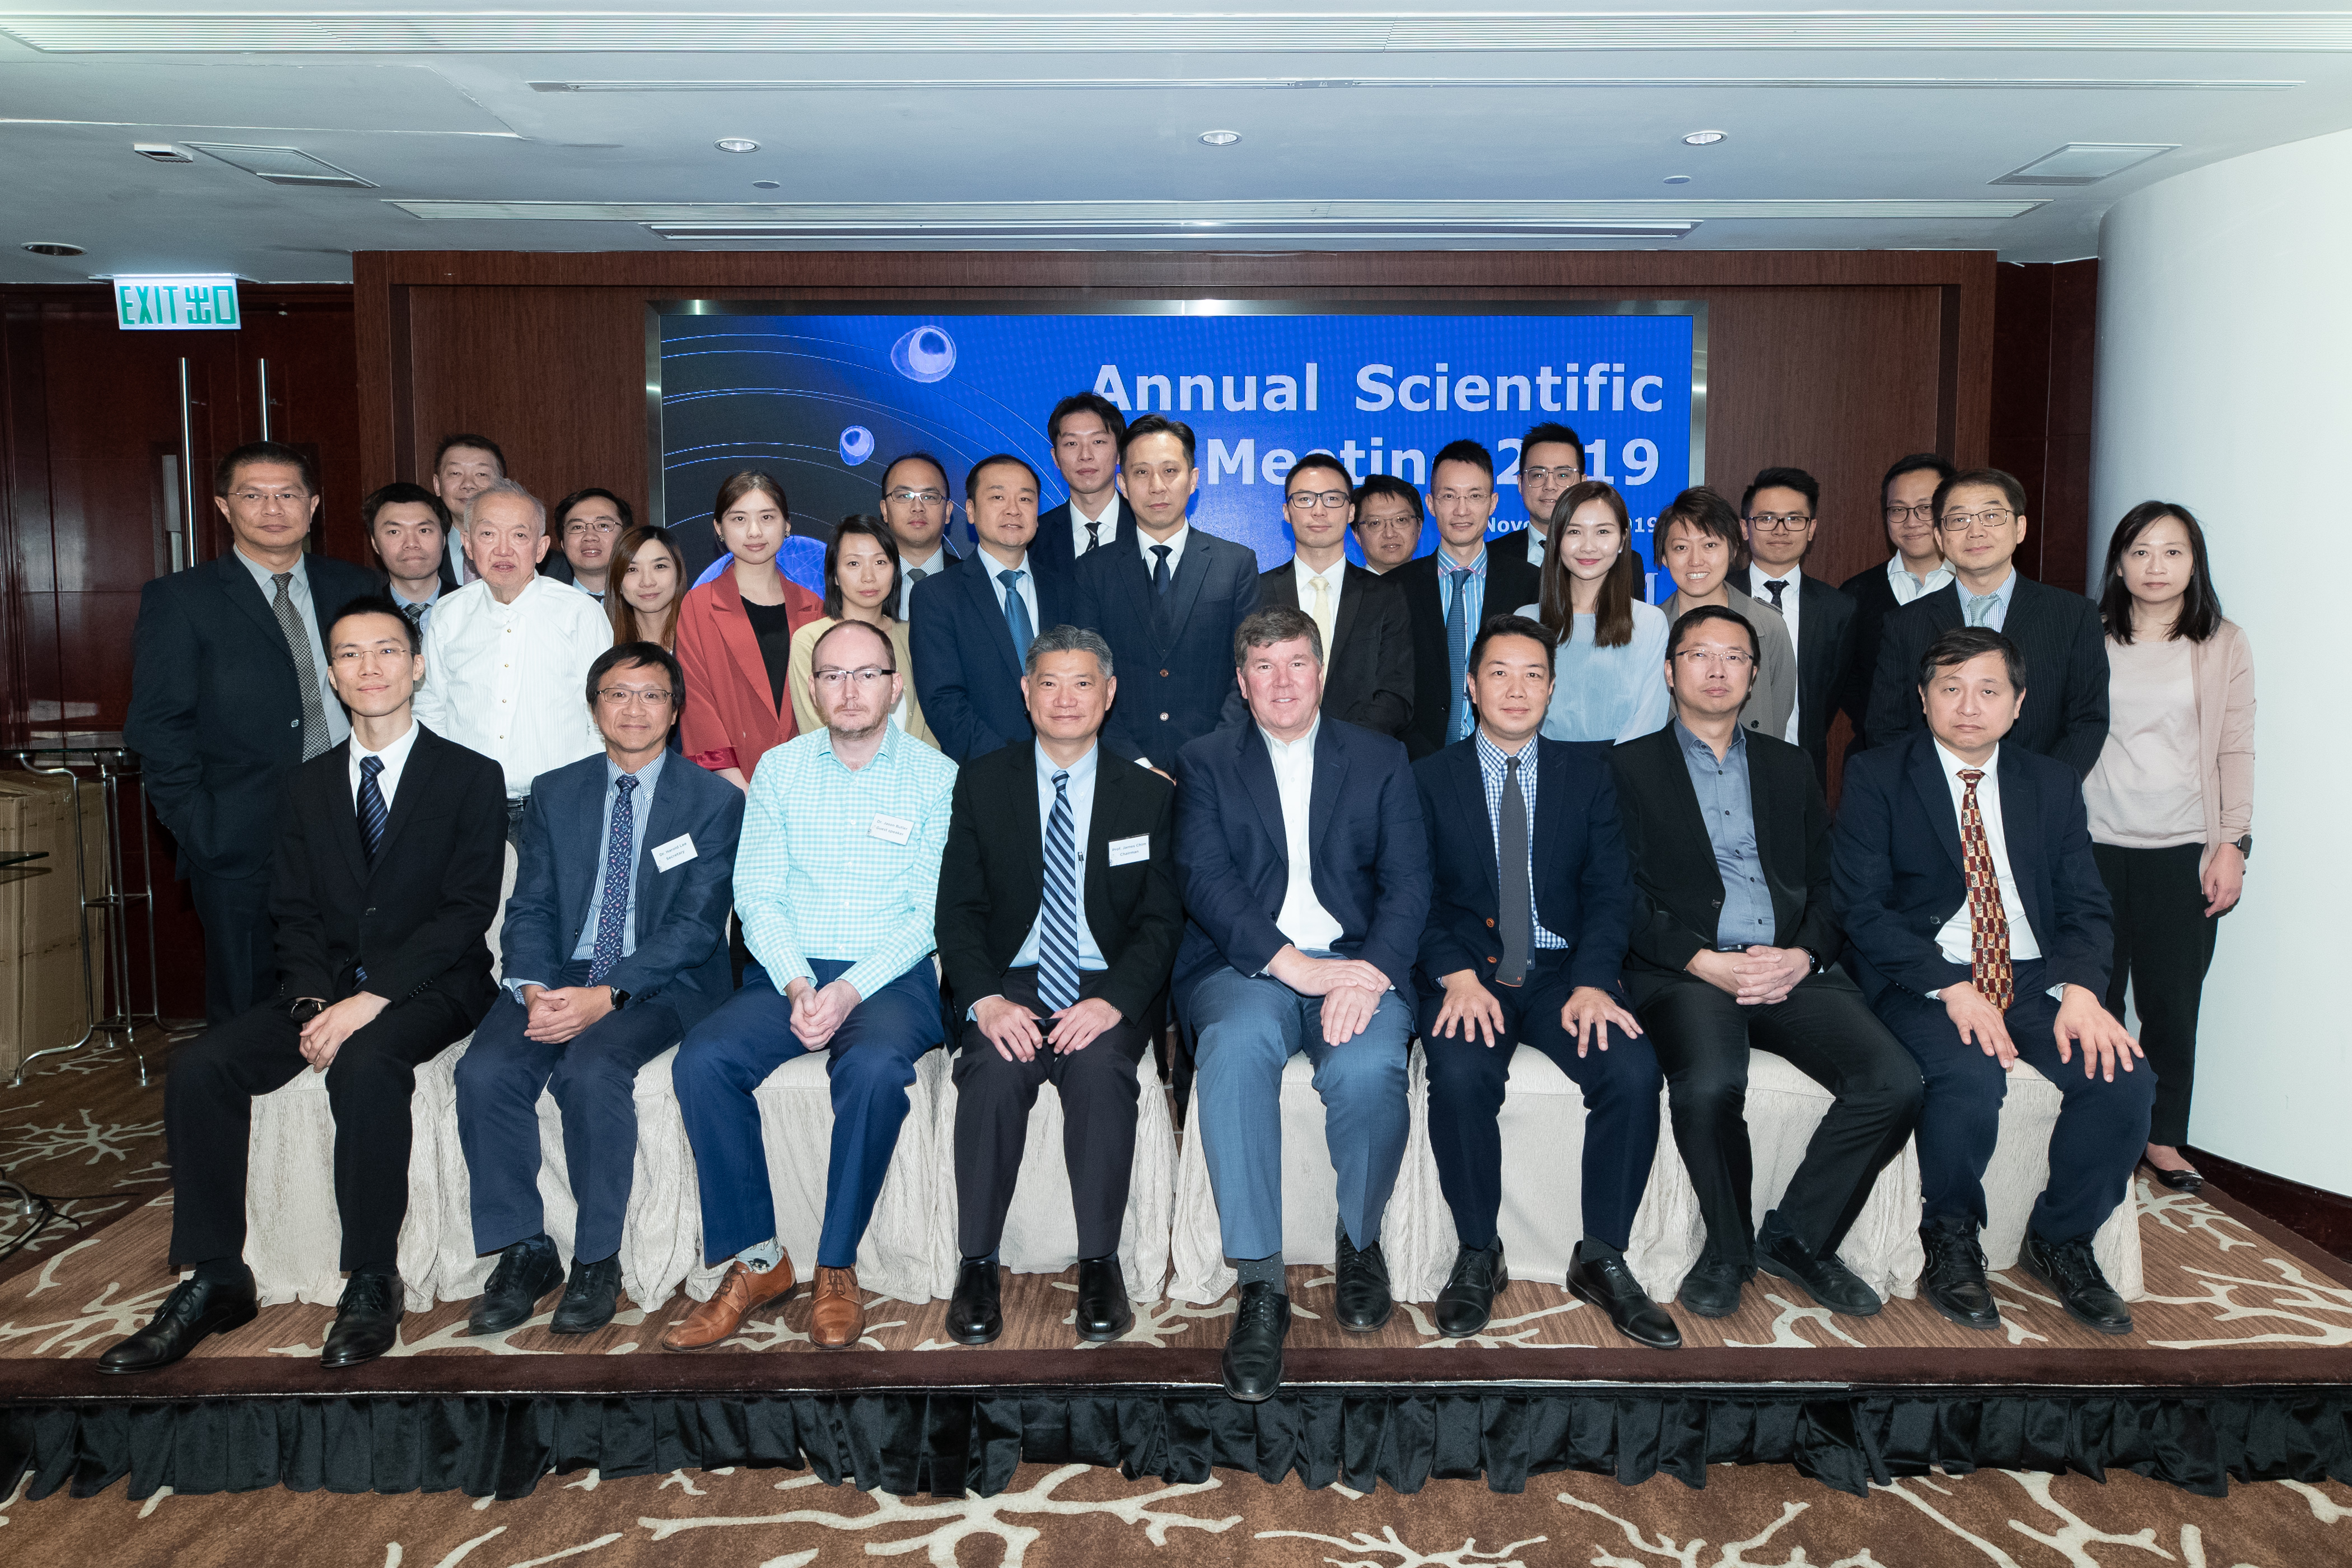 Annual Scientific Meeting 2019